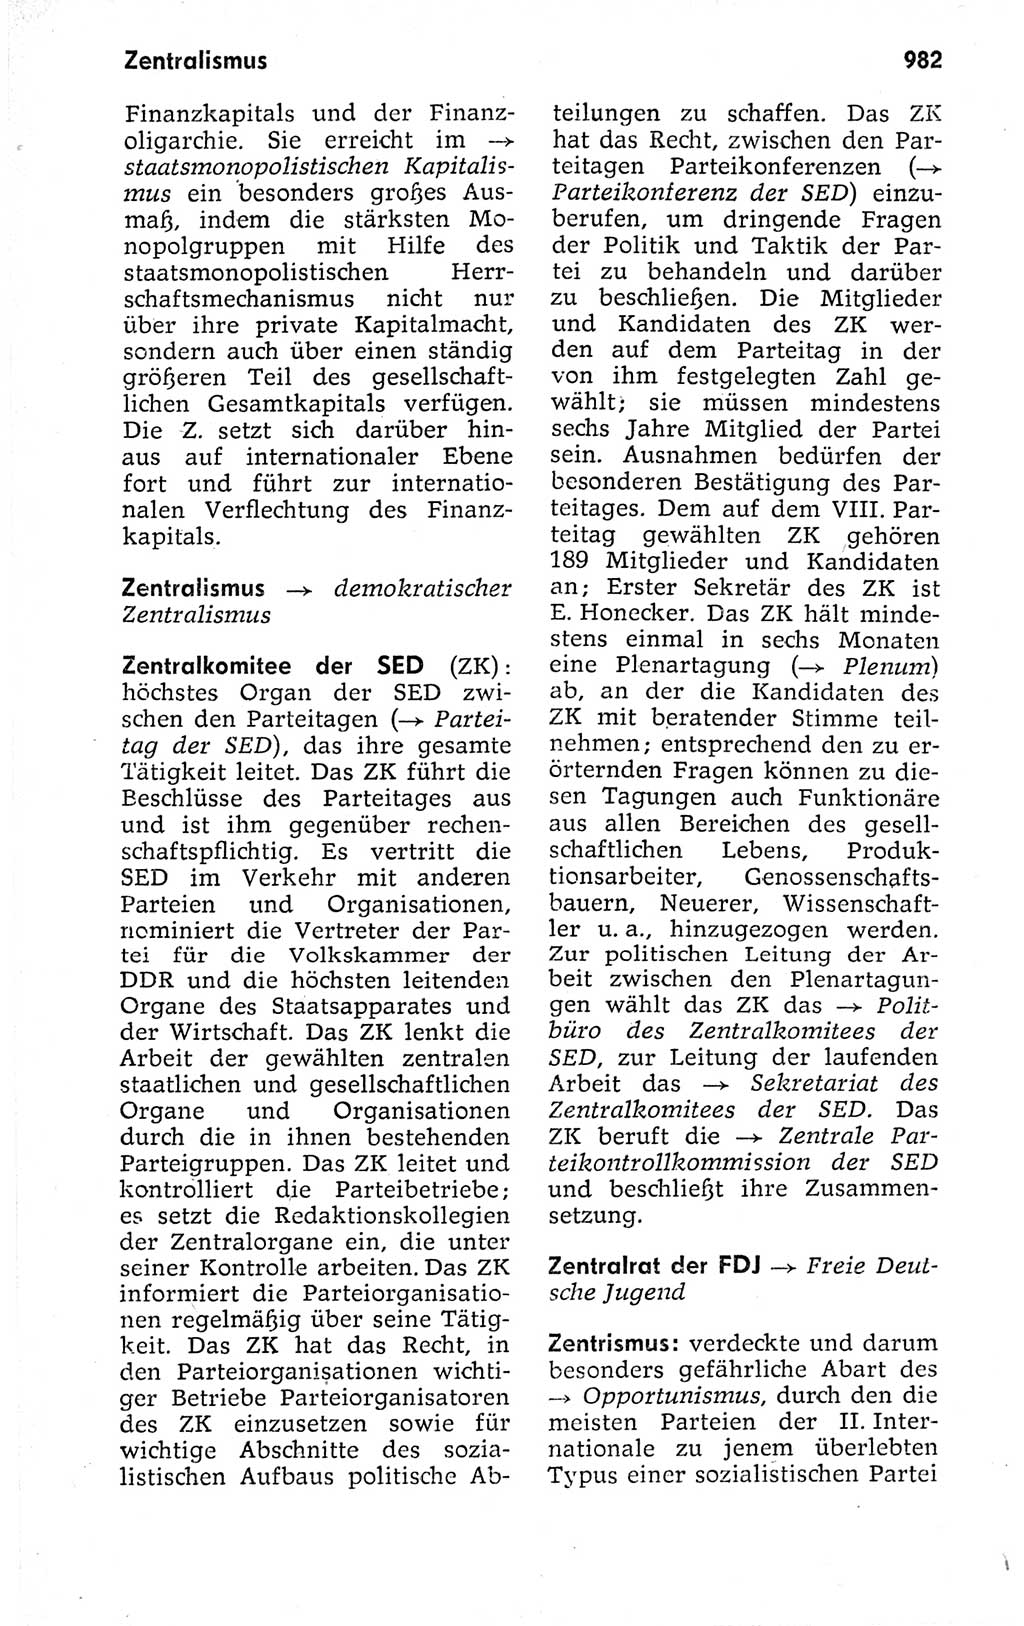 Kleines politisches Wörterbuch [Deutsche Demokratische Republik (DDR)] 1973, Seite 982 (Kl. pol. Wb. DDR 1973, S. 982)